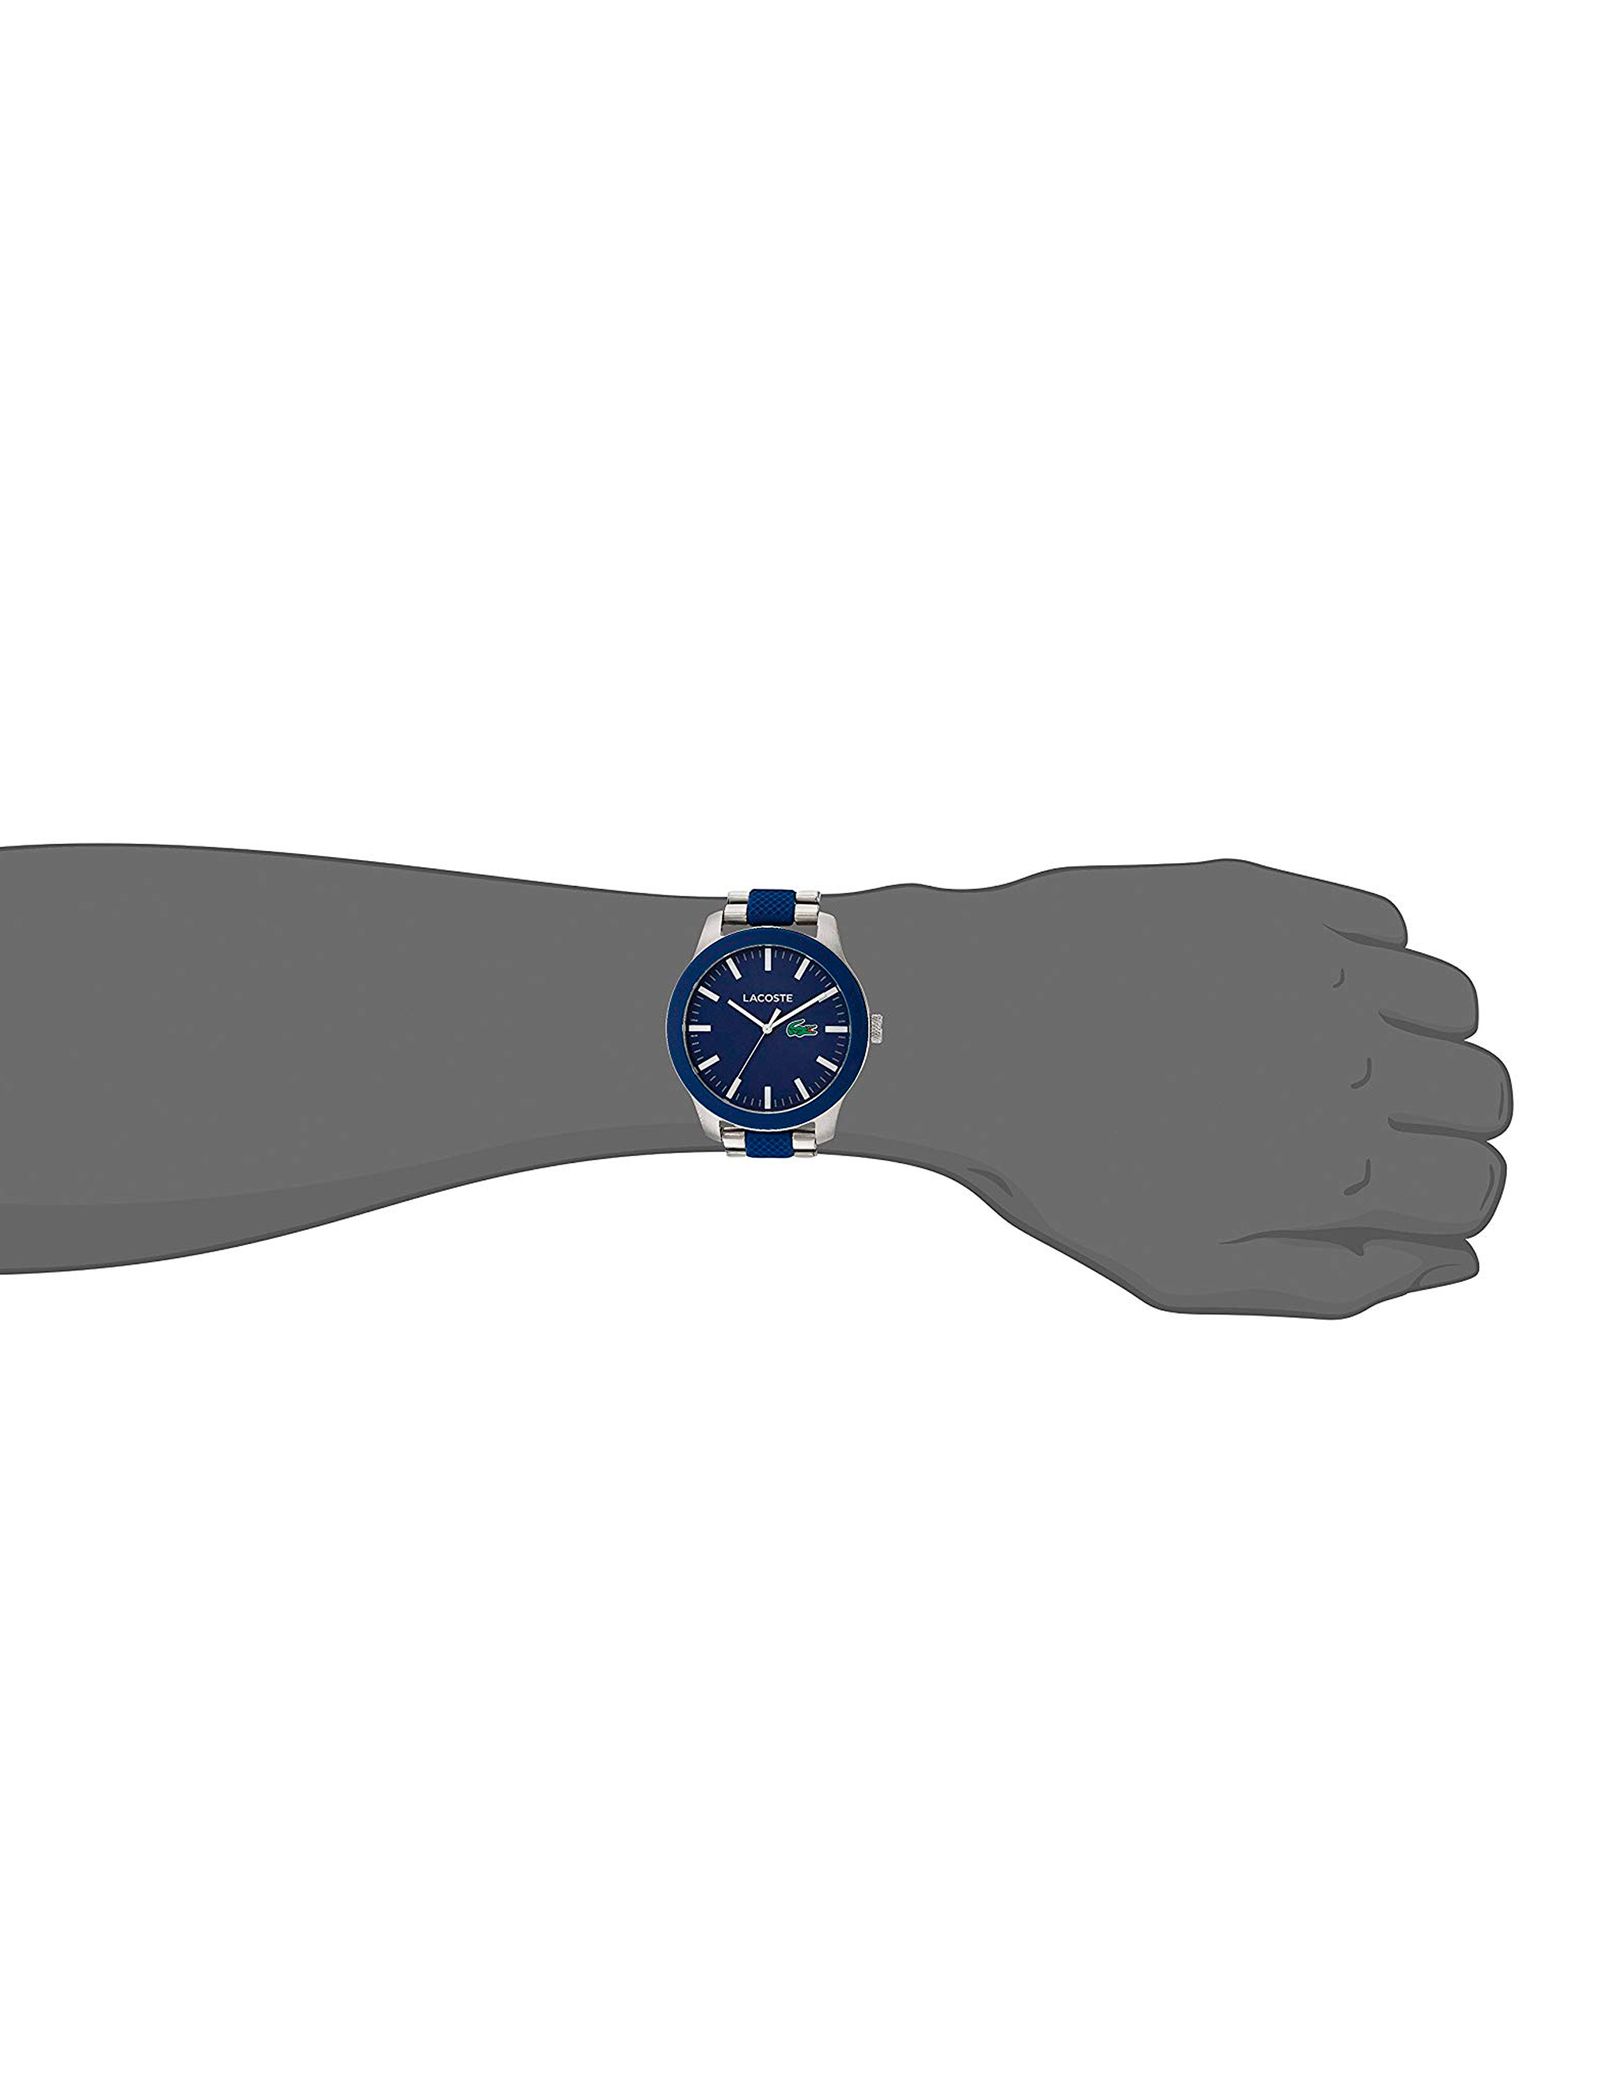 ساعت مچی عقربه ای مردانه لاگوست مدل 2010891 - آبی - 5